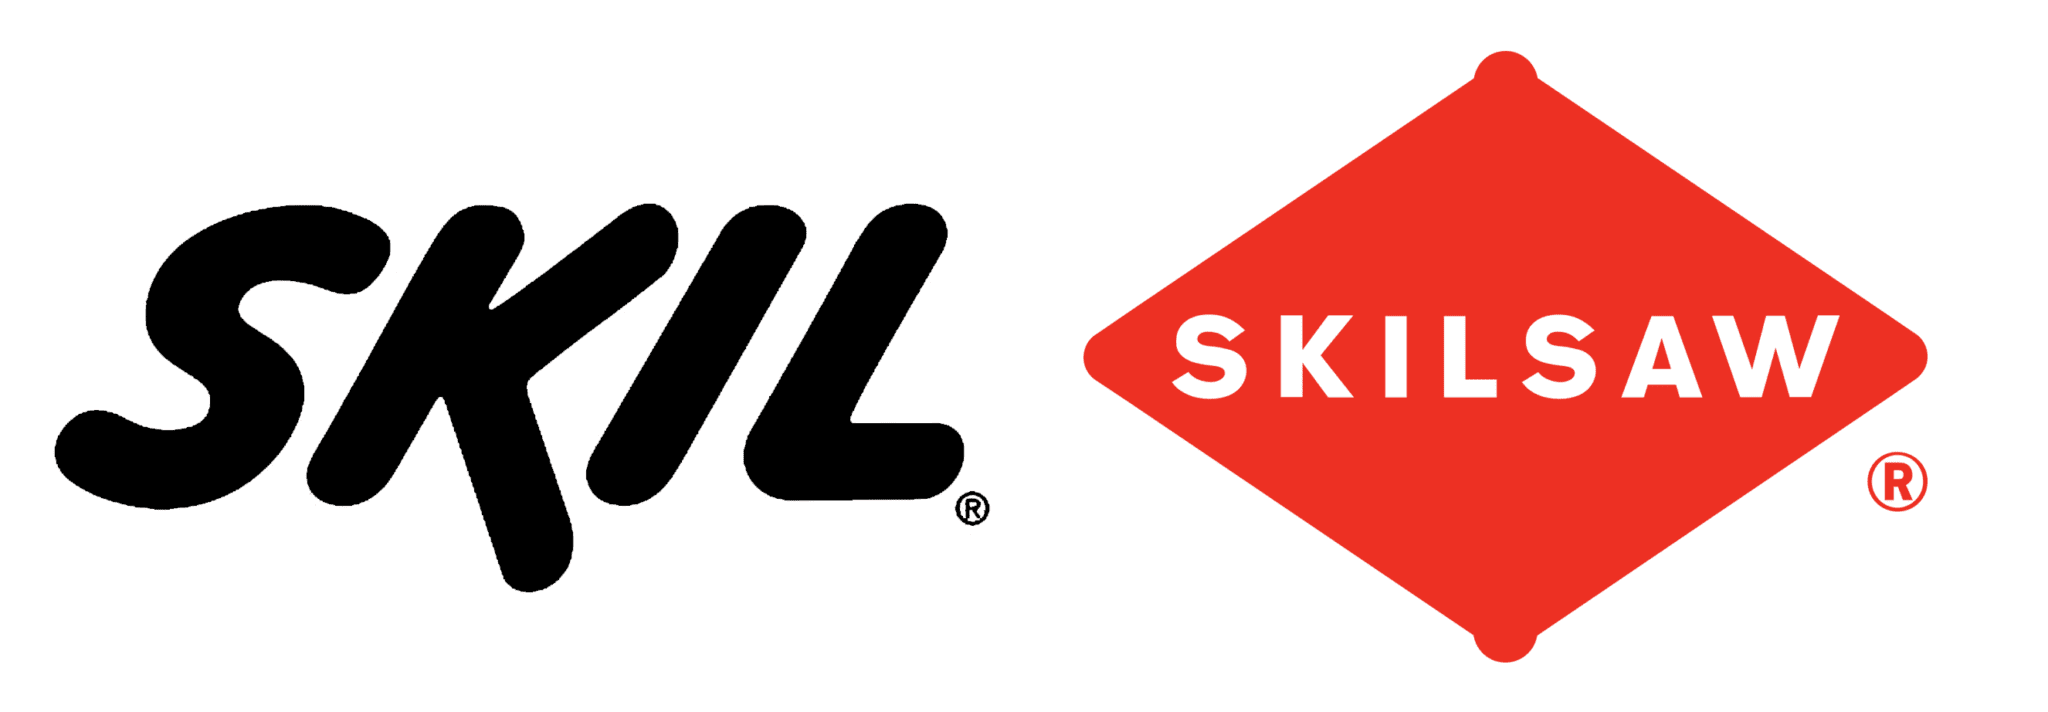 skilsaw vecto logo